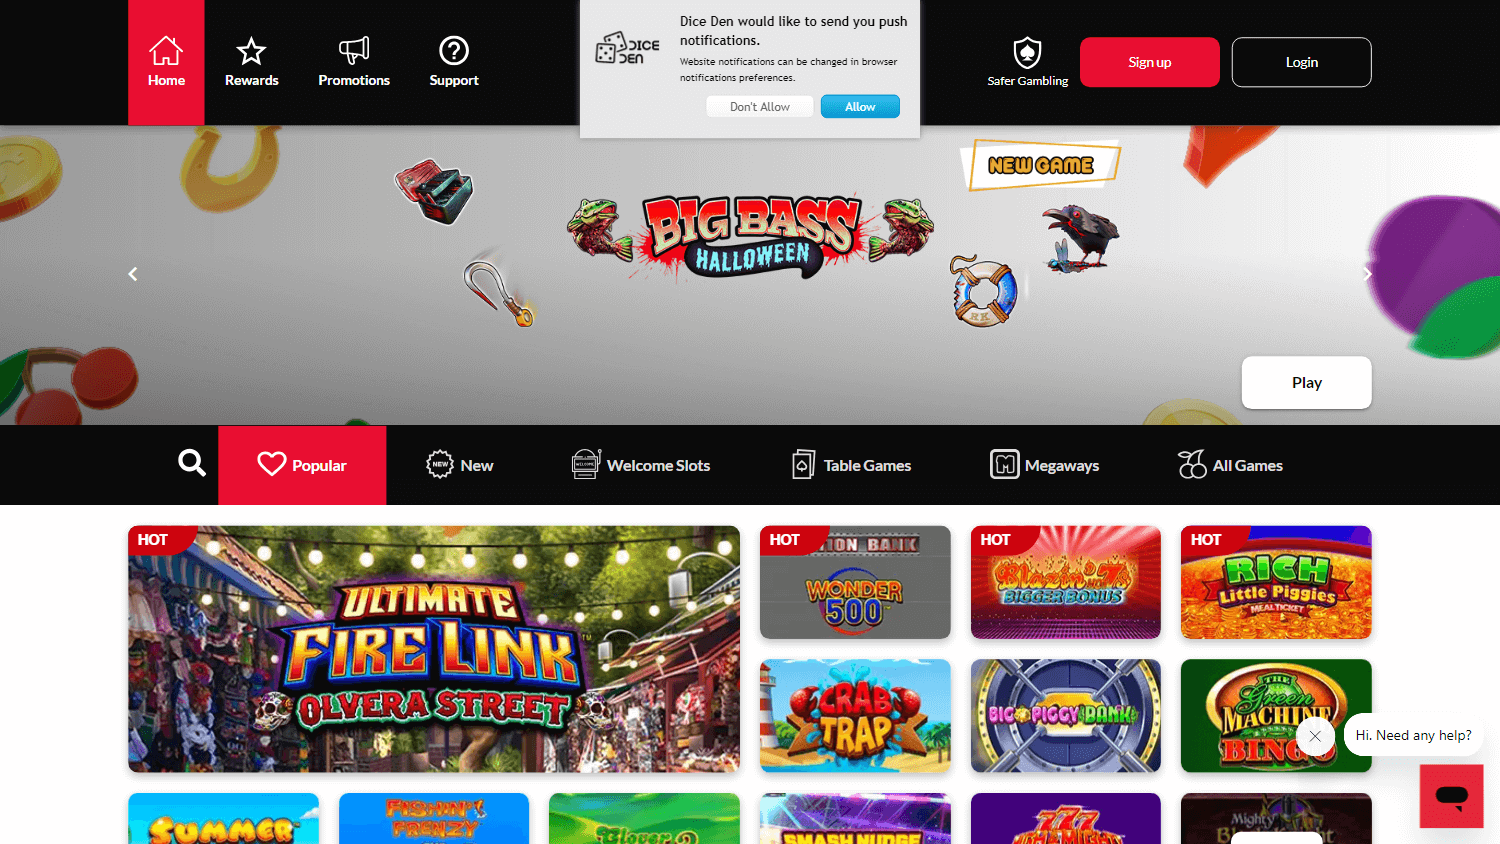 dice_den_casino_homepage_desktop